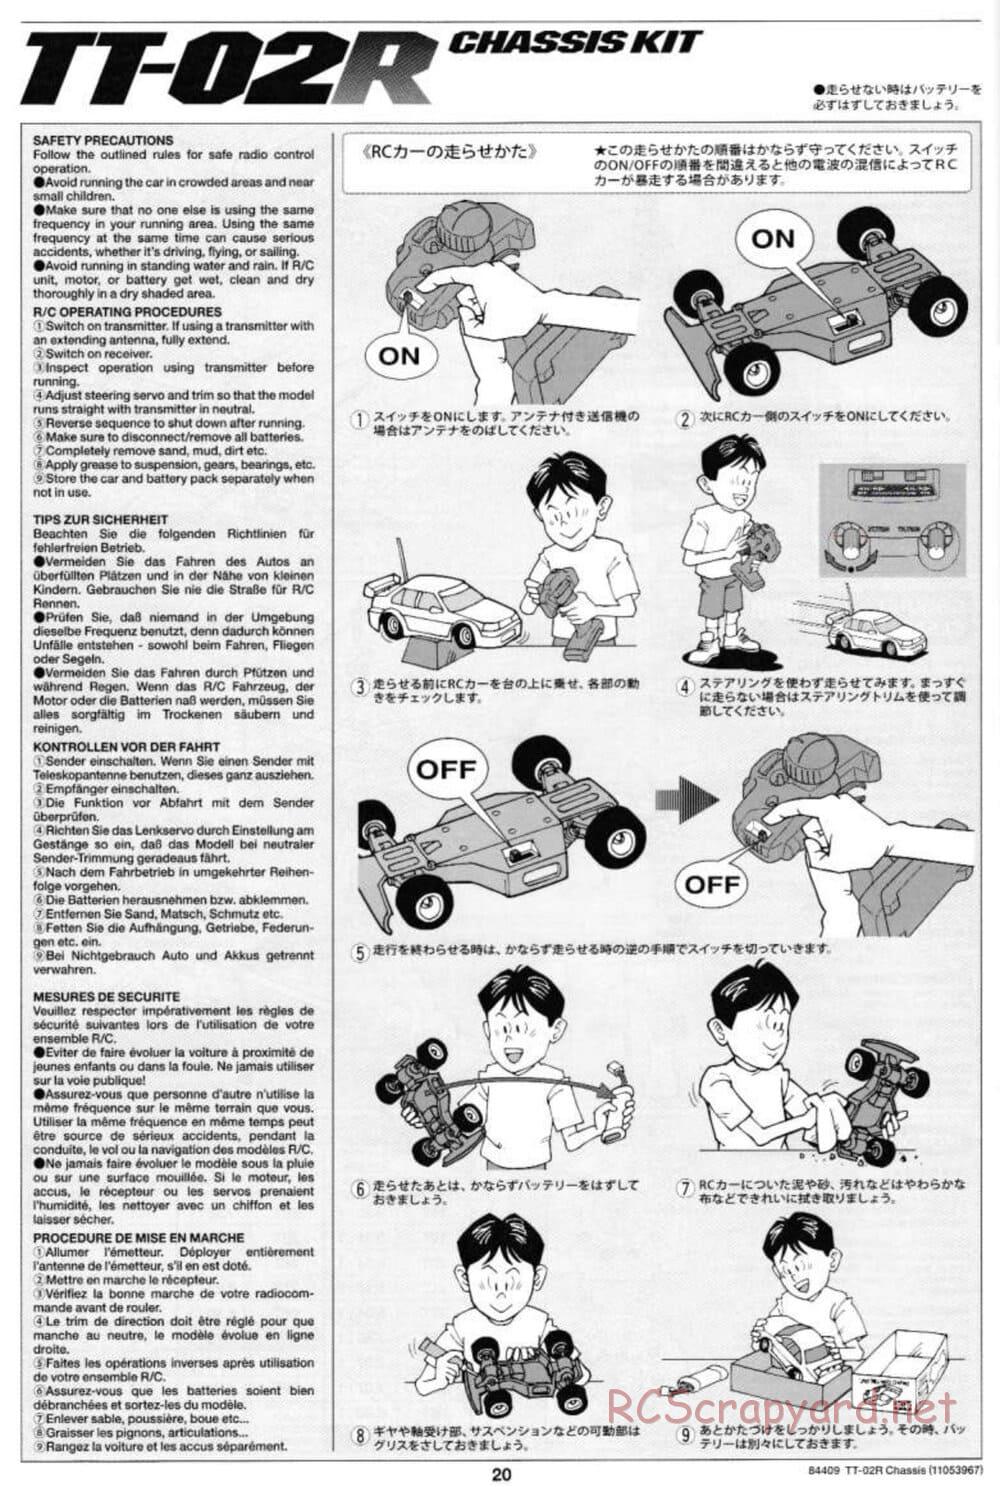 Tamiya - TT-02R Chassis - Manual - Page 20